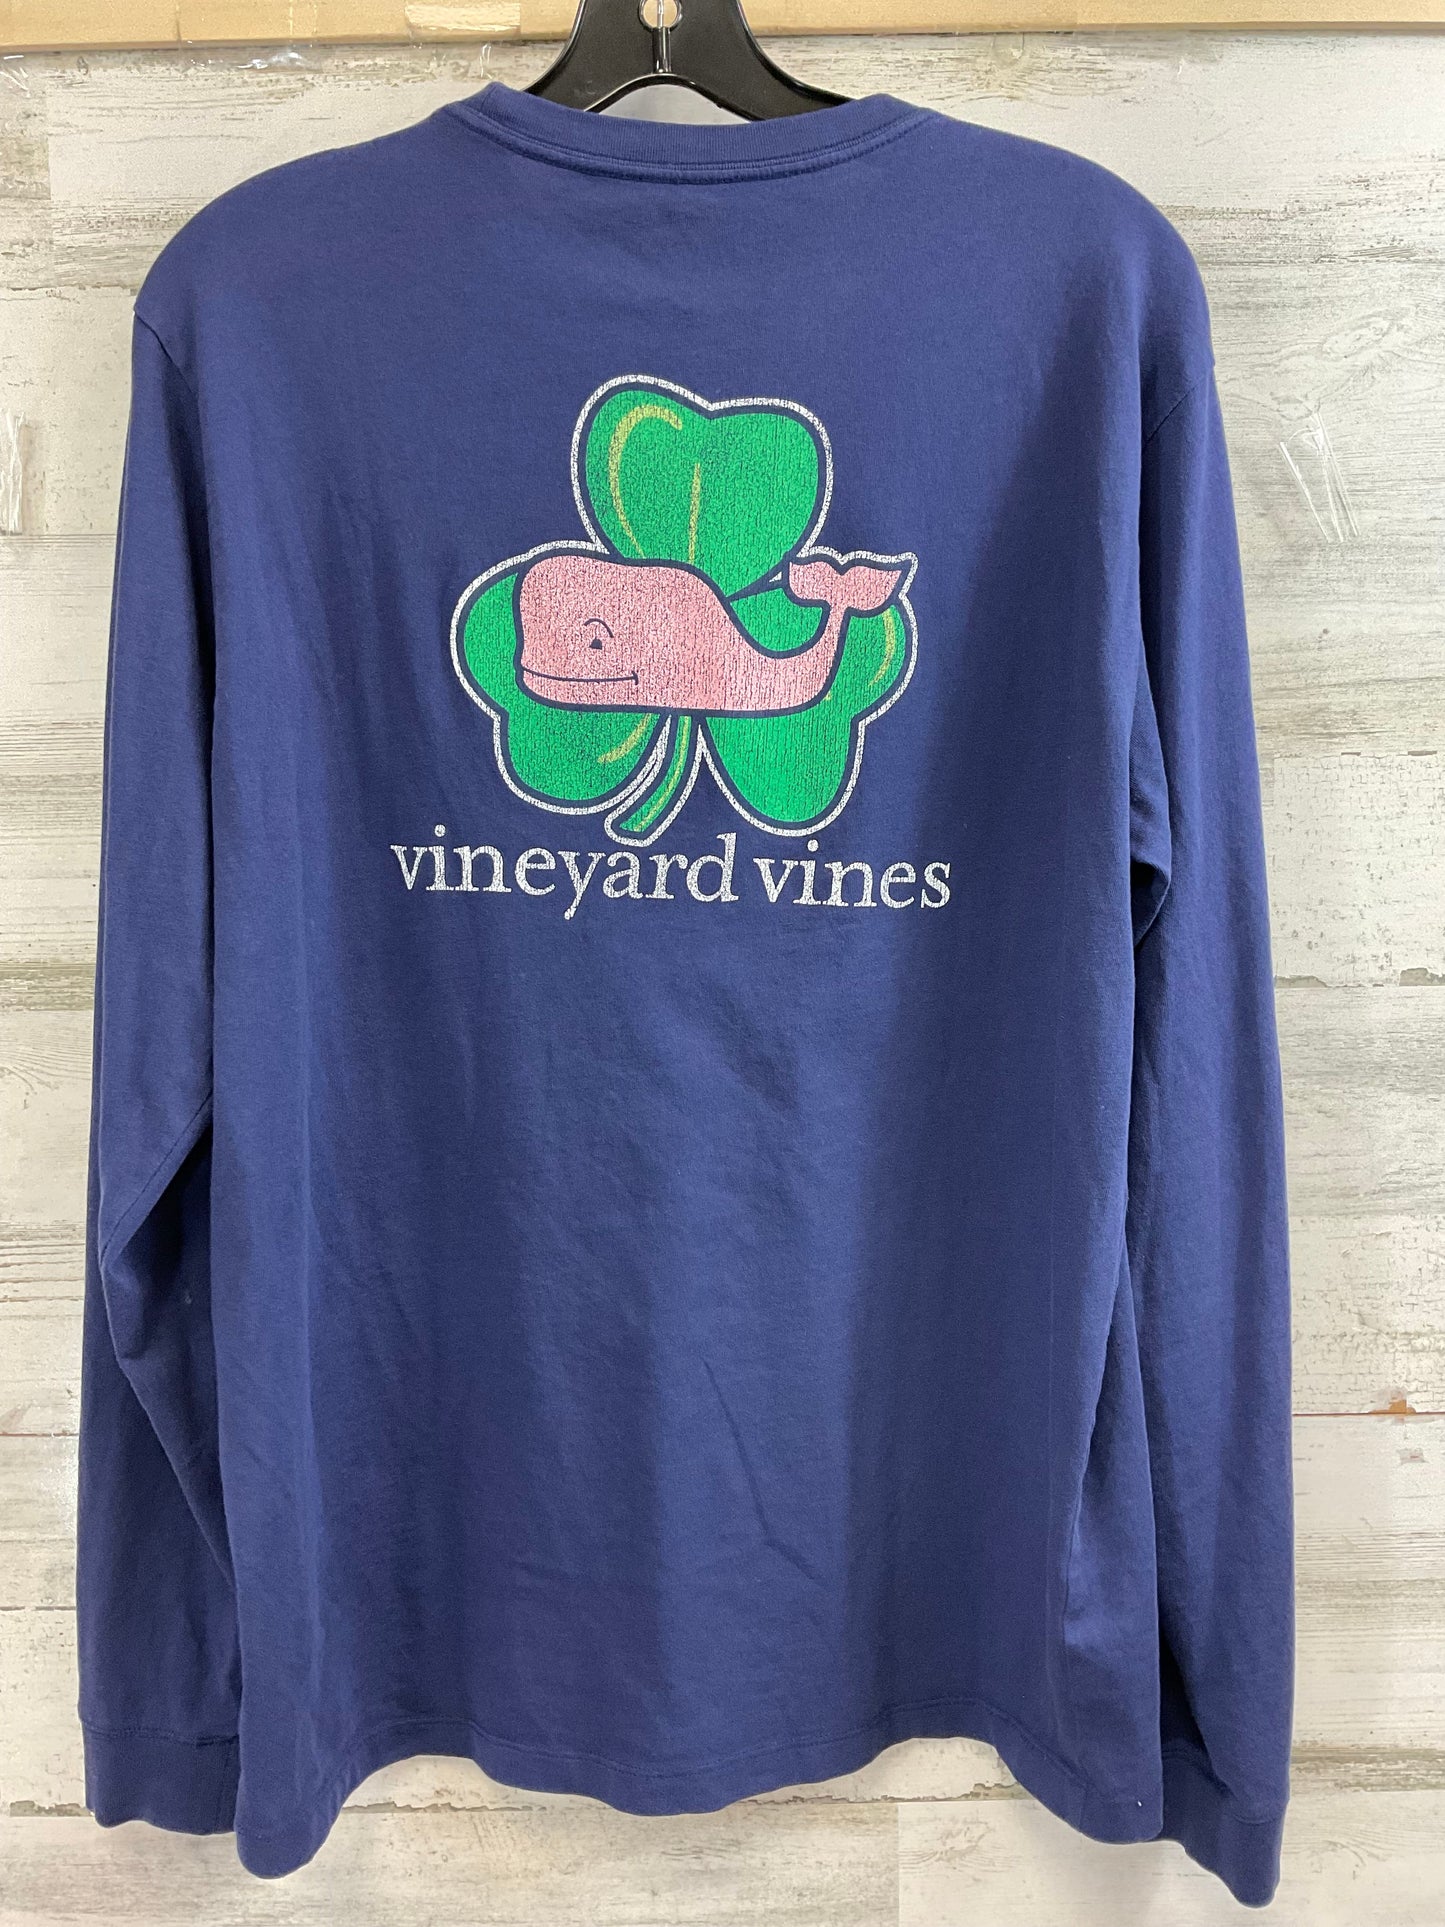 Blue Top Long Sleeve Vineyard Vines, Size S